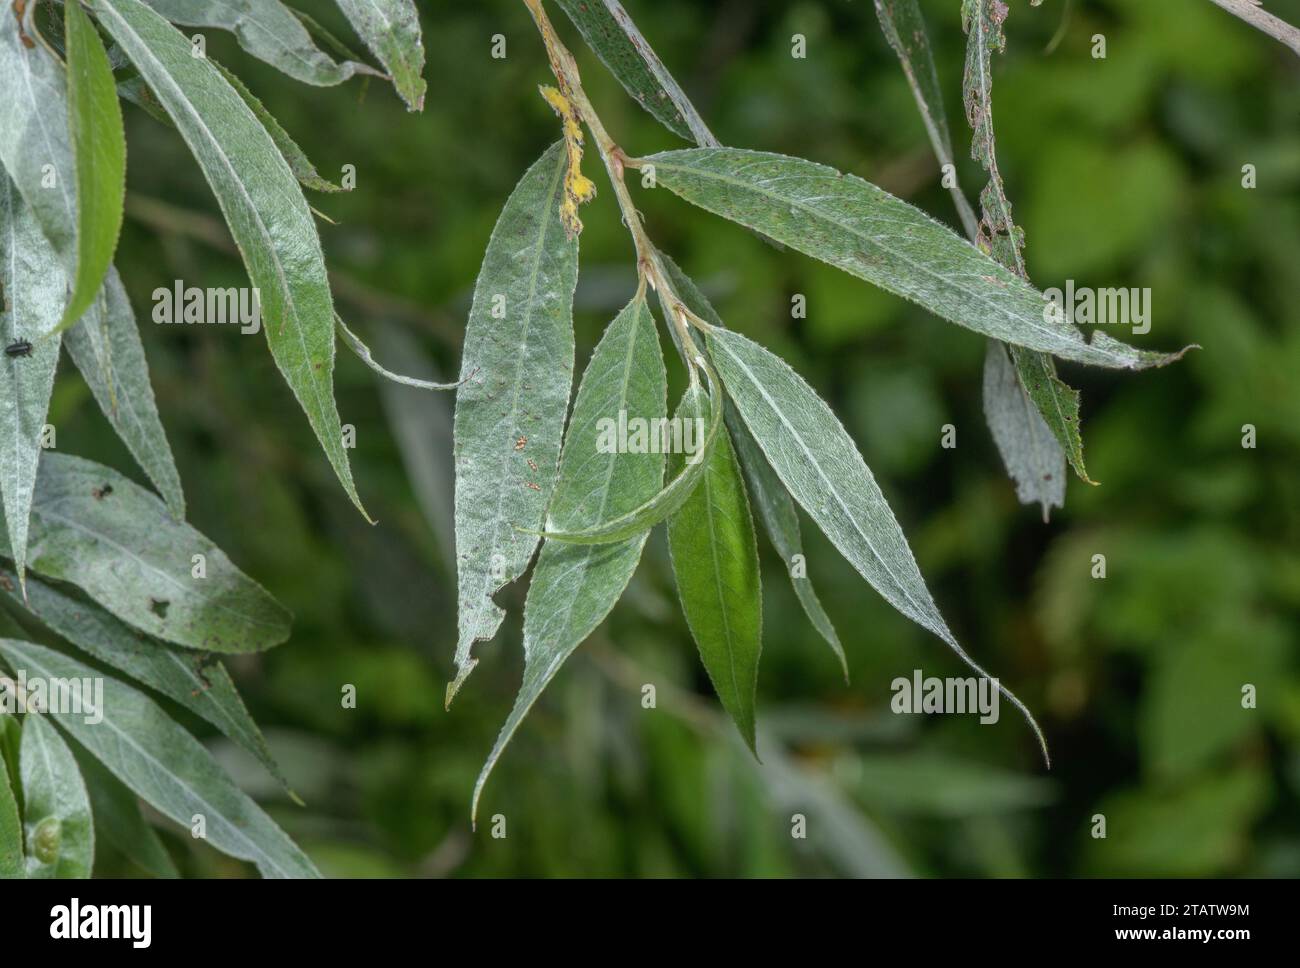 Weiße Weide, Salix alba Laub. Lanzettartige Blätter Stockfoto